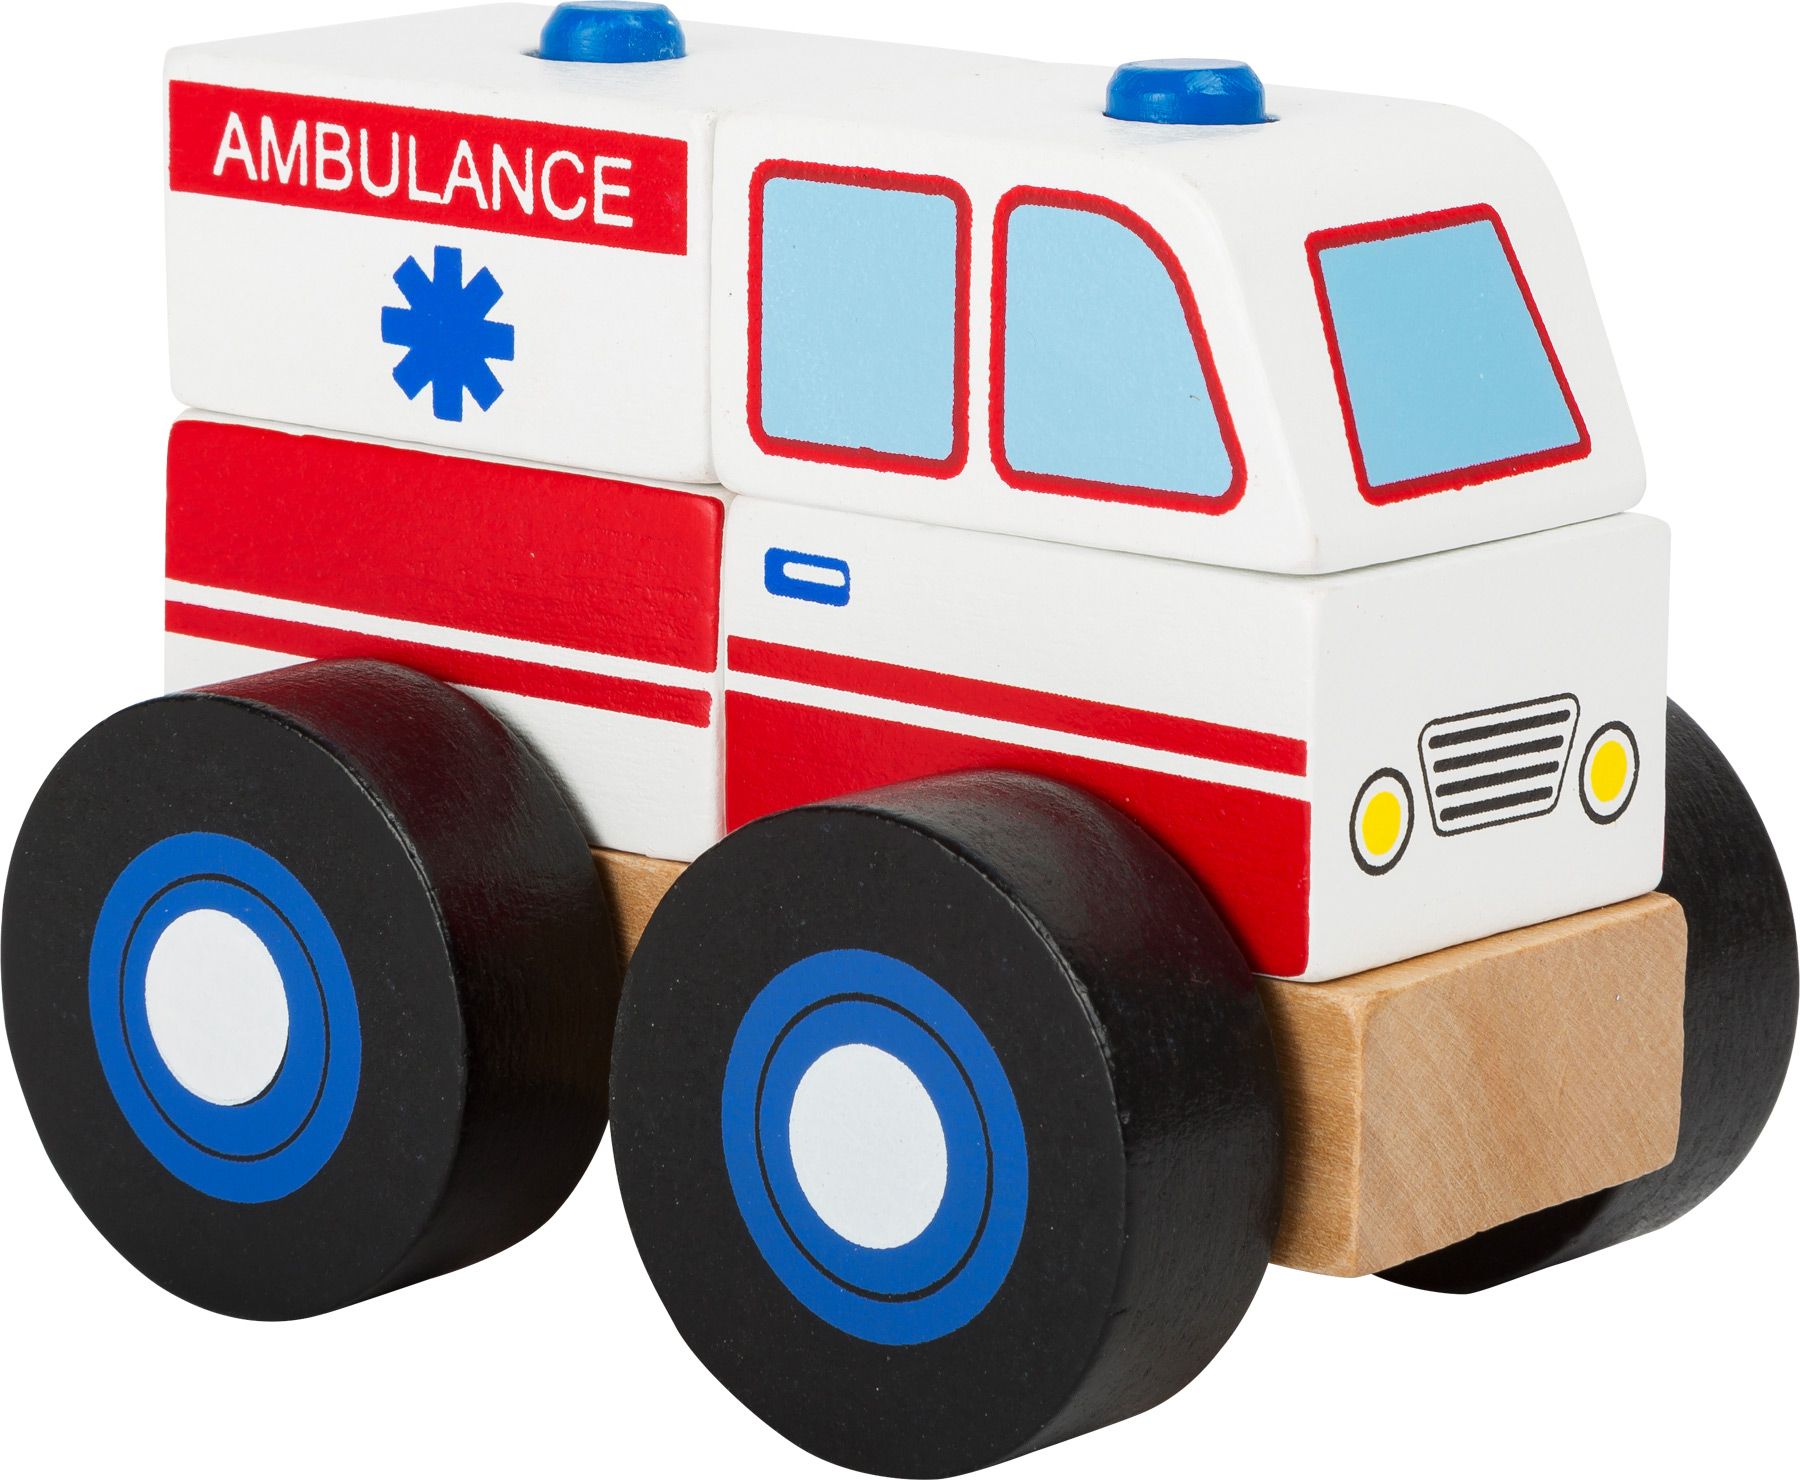 Ambulance à Construire